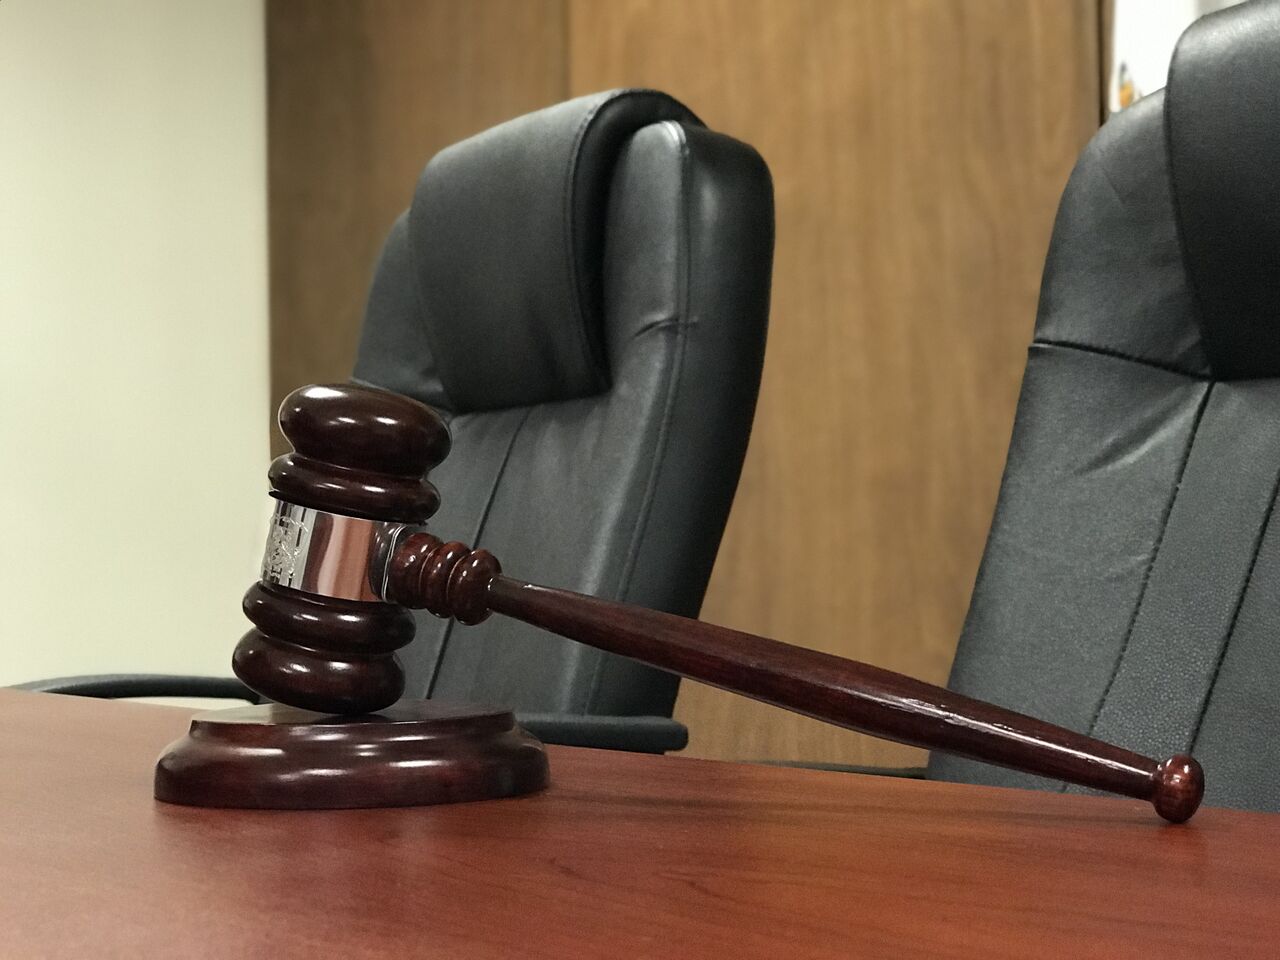 Alistan Juicio Oral contra ex elemento acusado de matar un niño en Saltillo